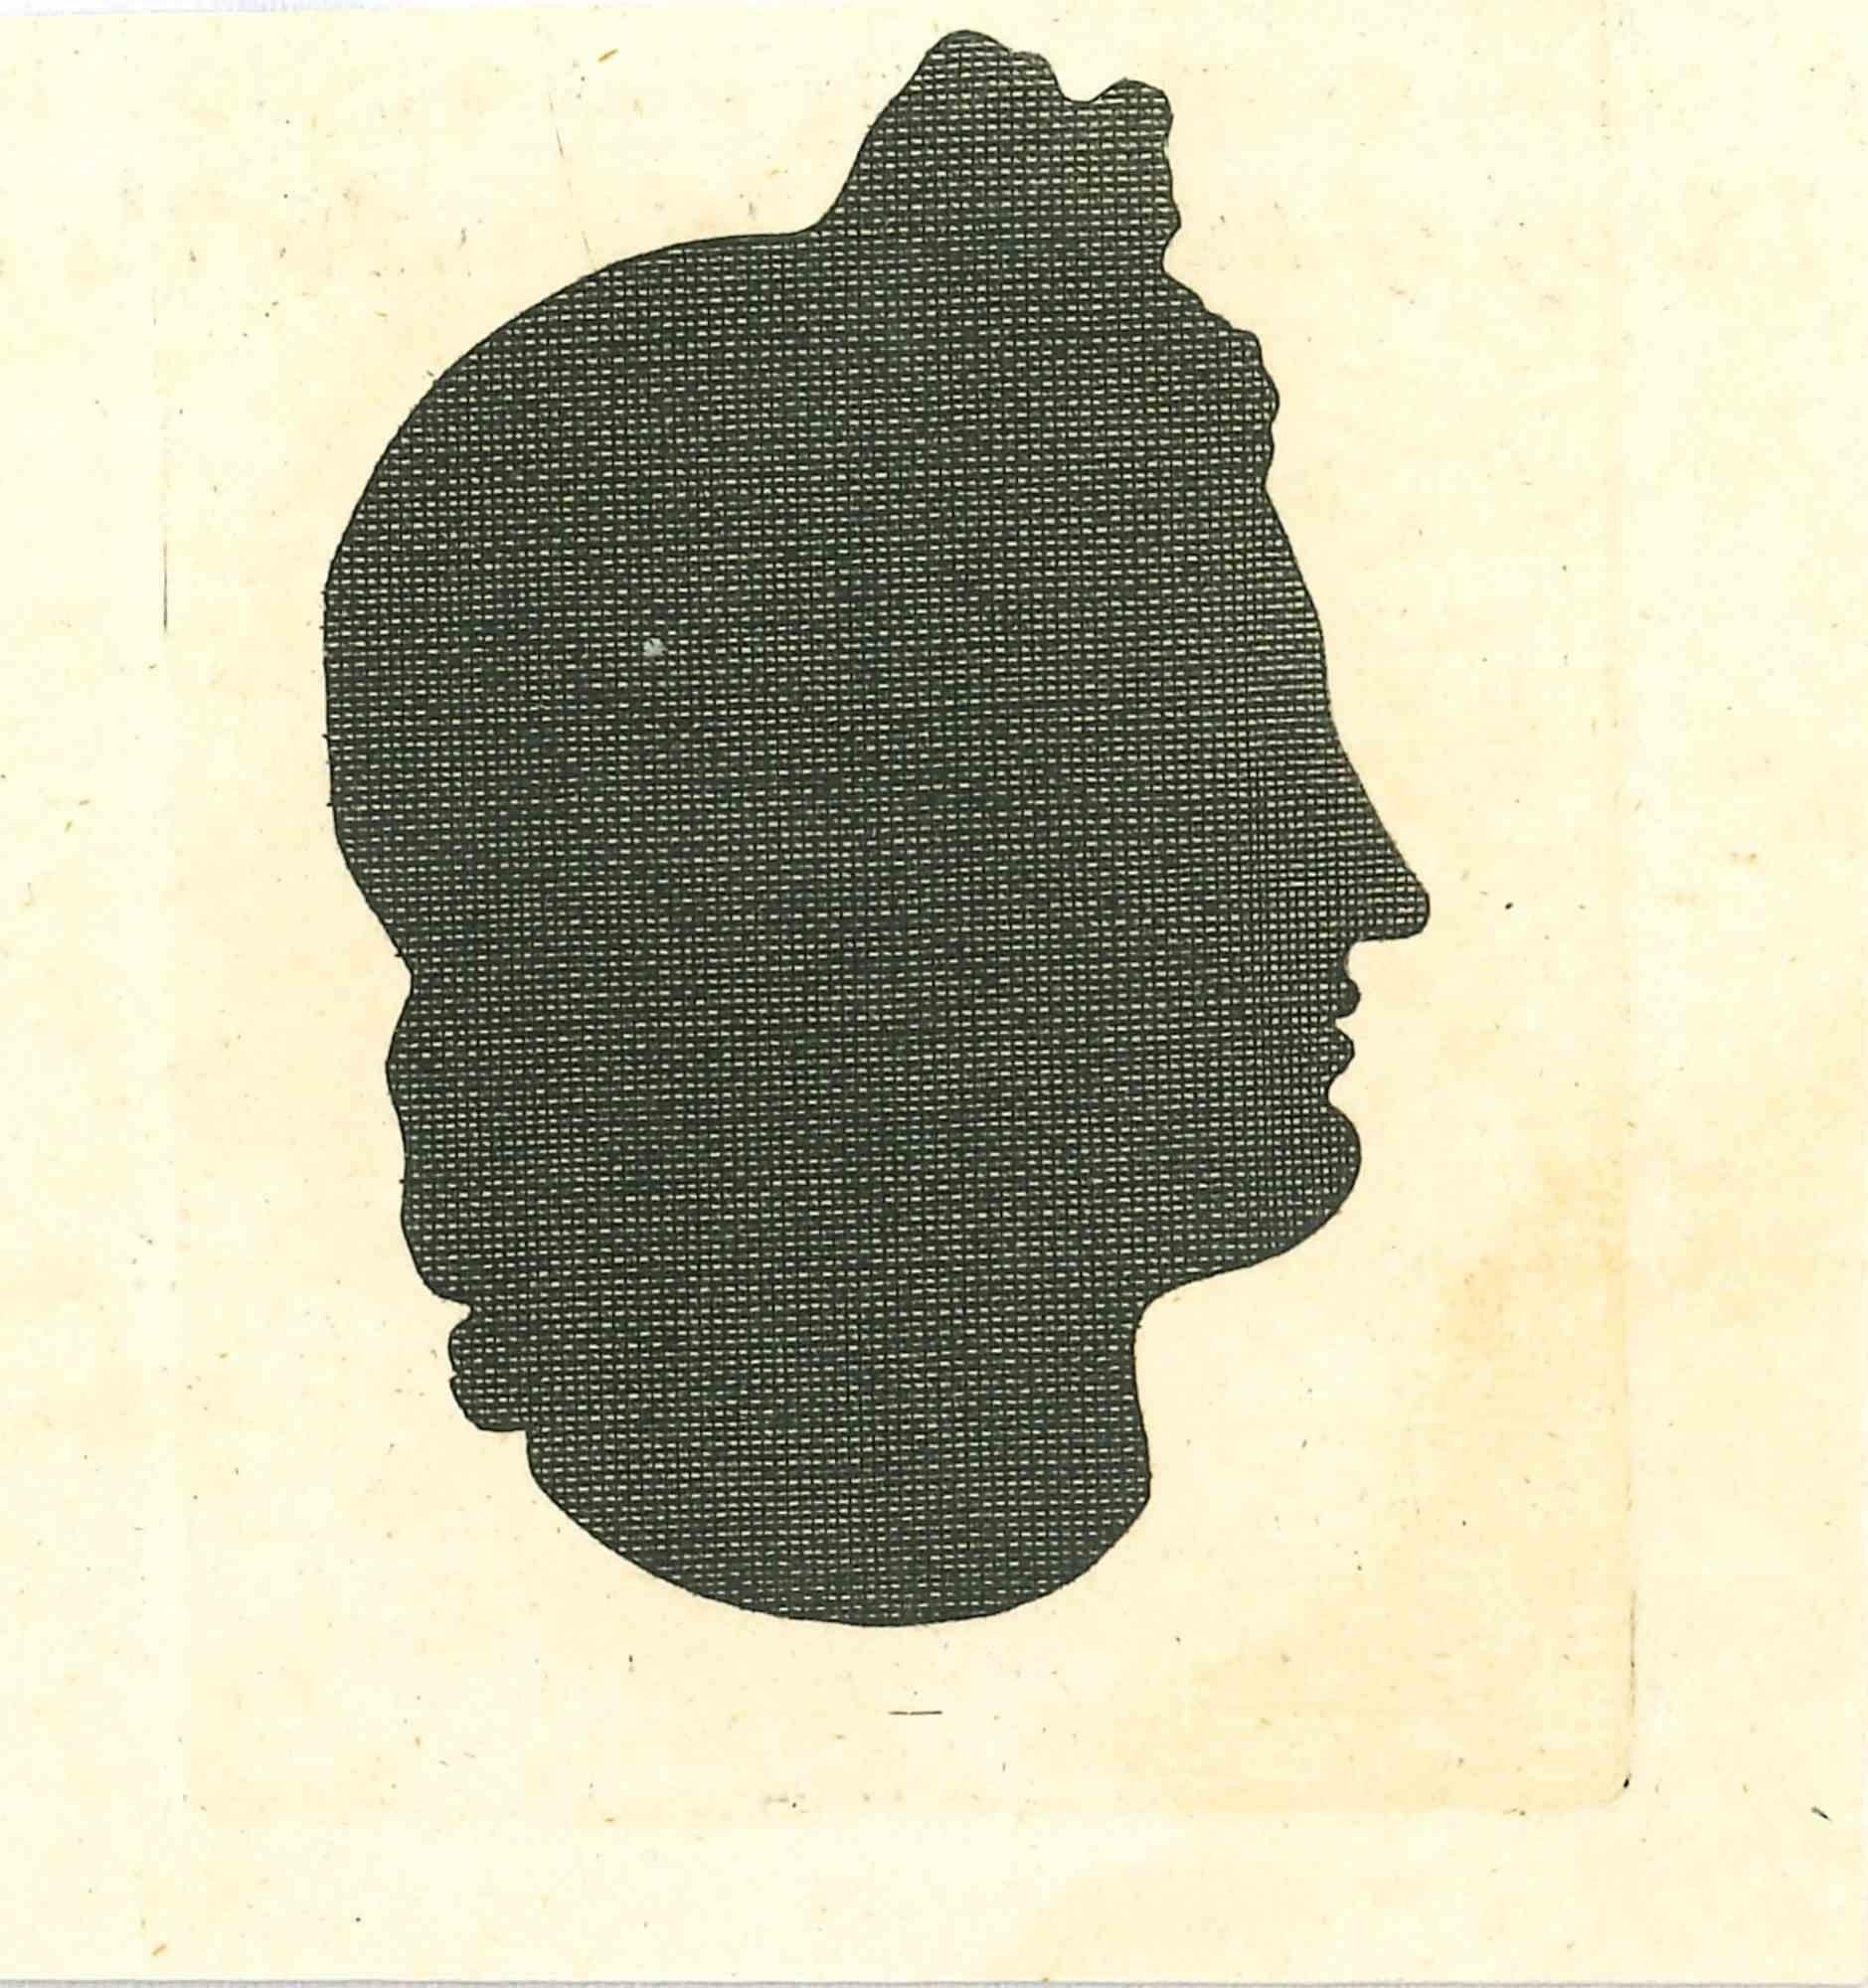 Die Physiognomie - Die Silhouette  Profile ist eine Original-Radierung von Thomas Holloway für Johann Caspar Lavaters "Essays on Physiognomy, Designed to Promote the Knowledge and the Love of Mankind", London, Bensley, 1810. 

Mit dem Schriftzug auf